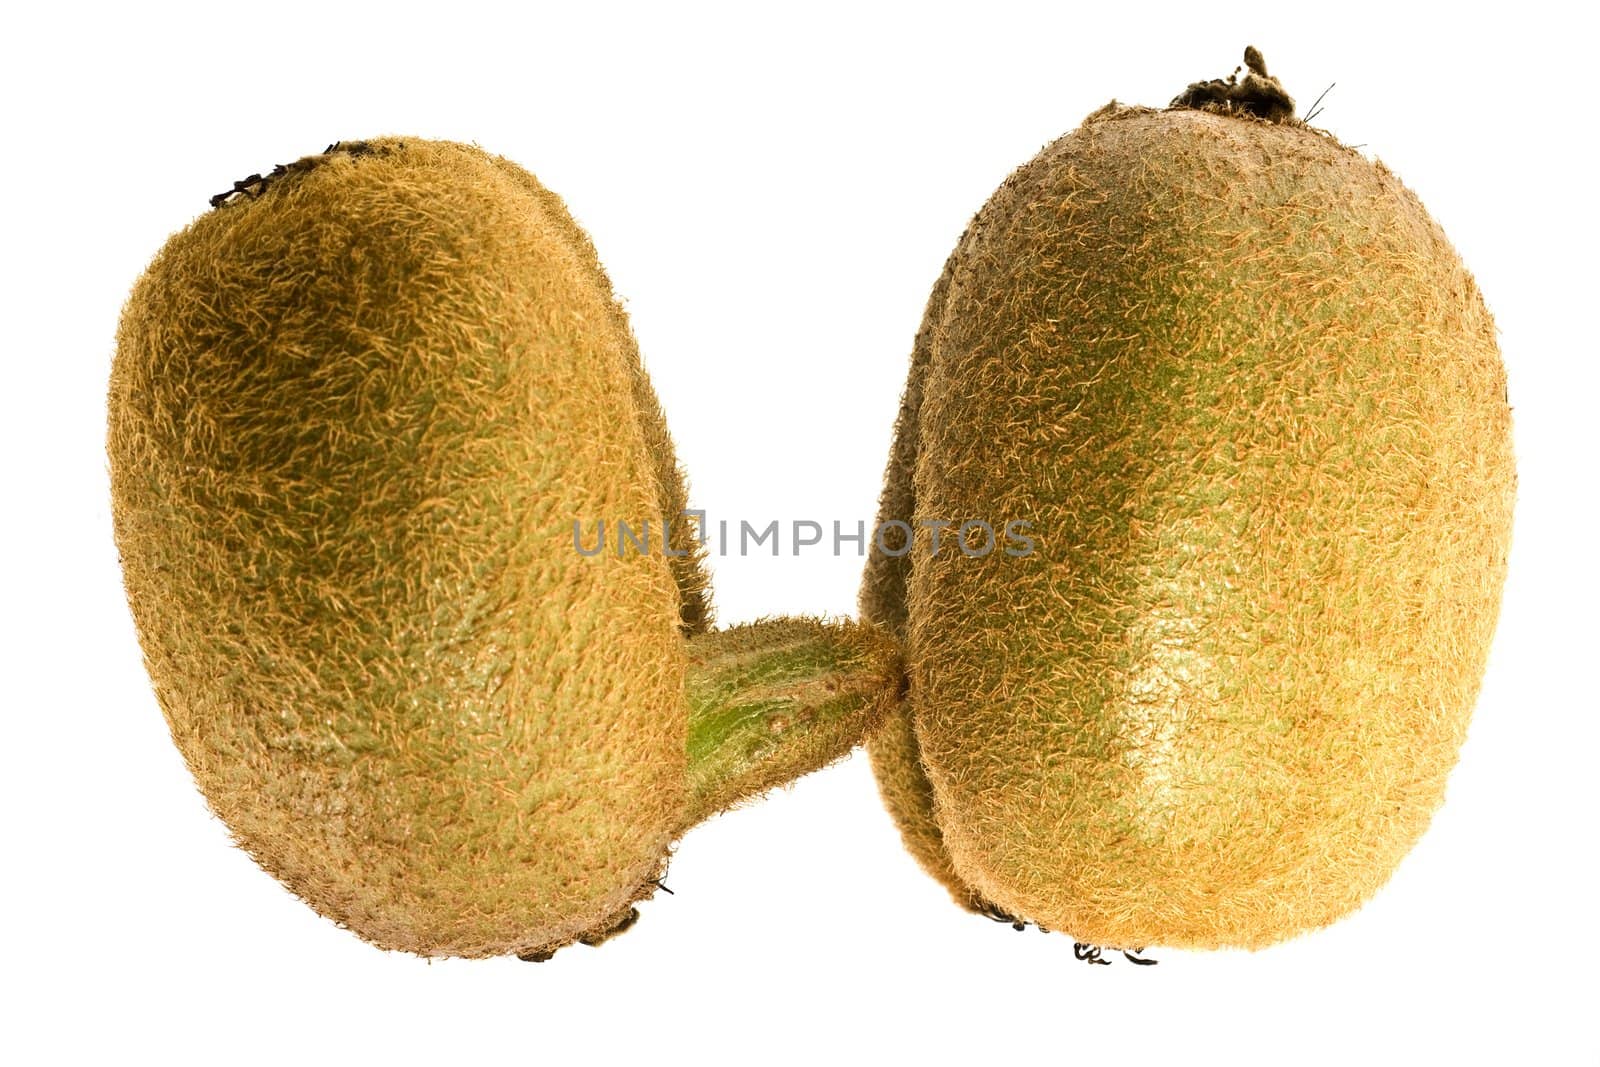 kiwifruit on white background